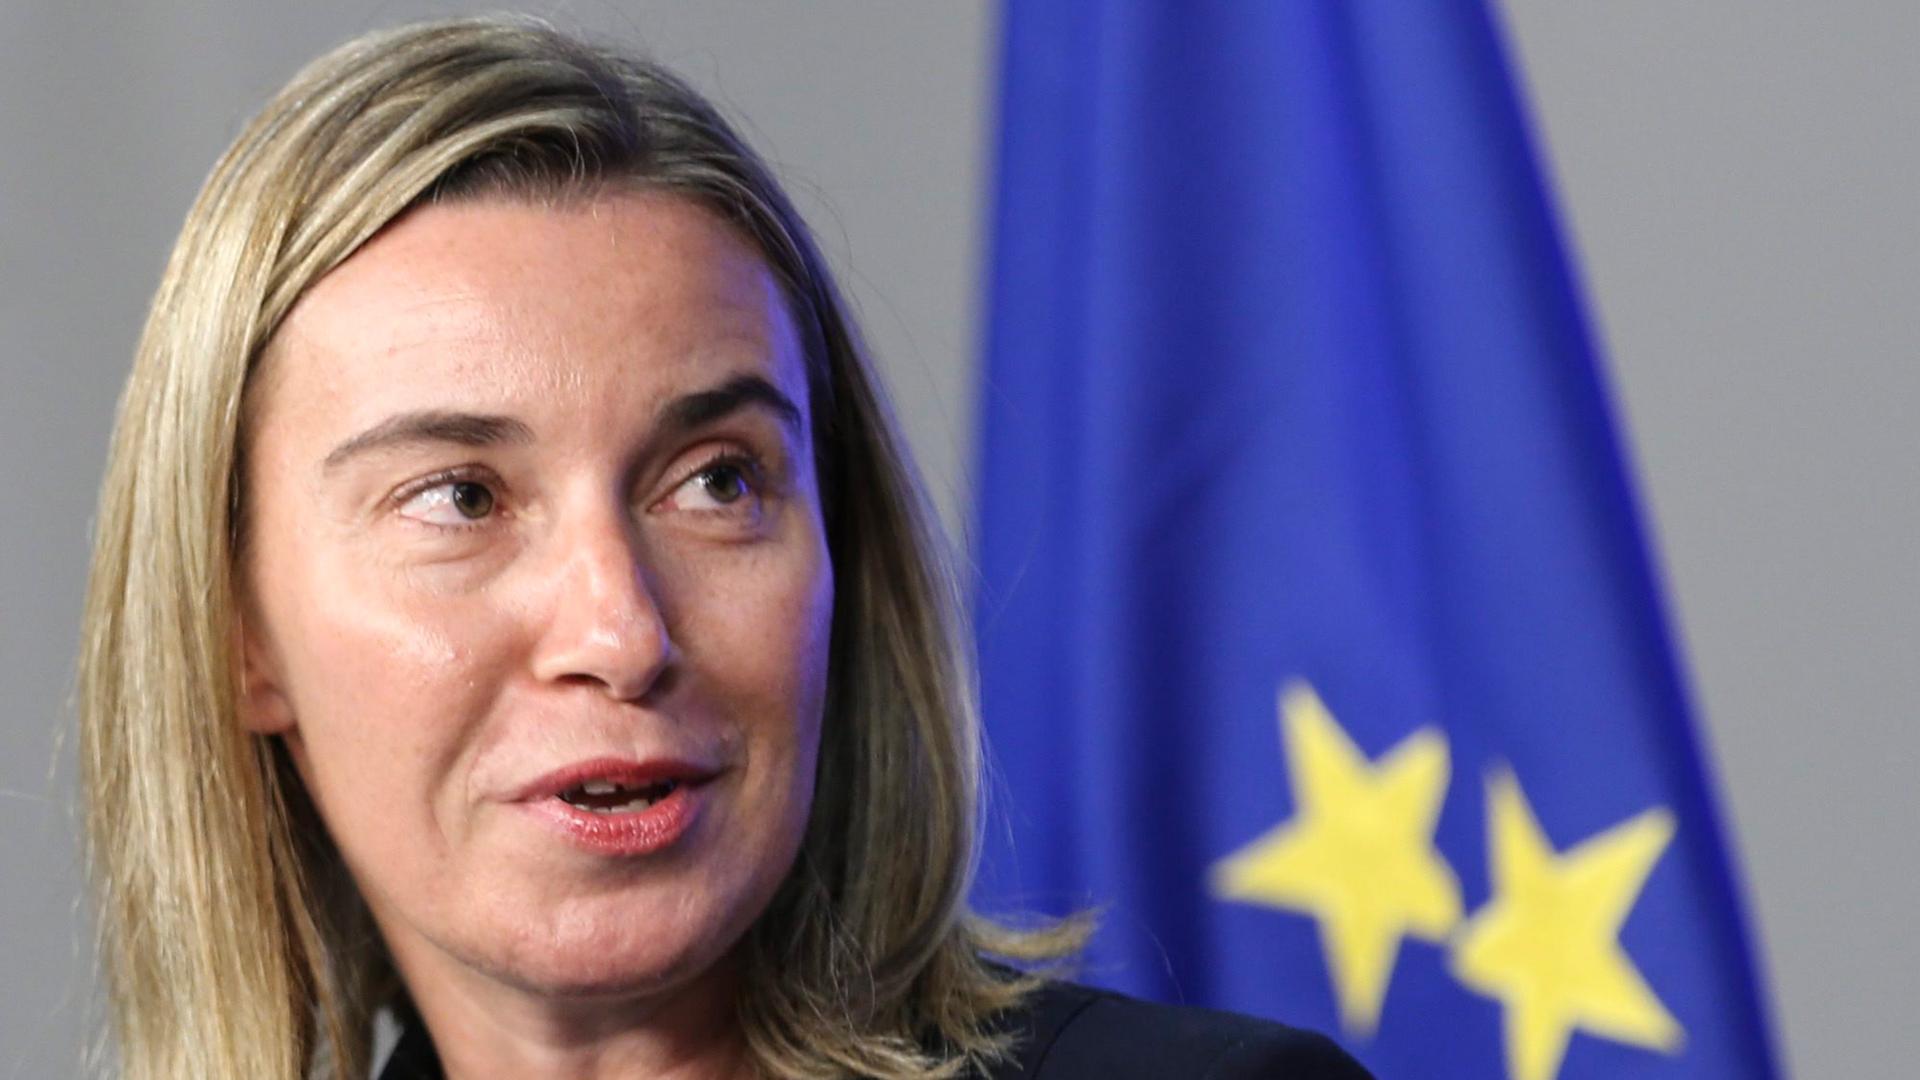 Federica Mogherini, die EU-Außenbeauftragte, vor einer EU-Flagge